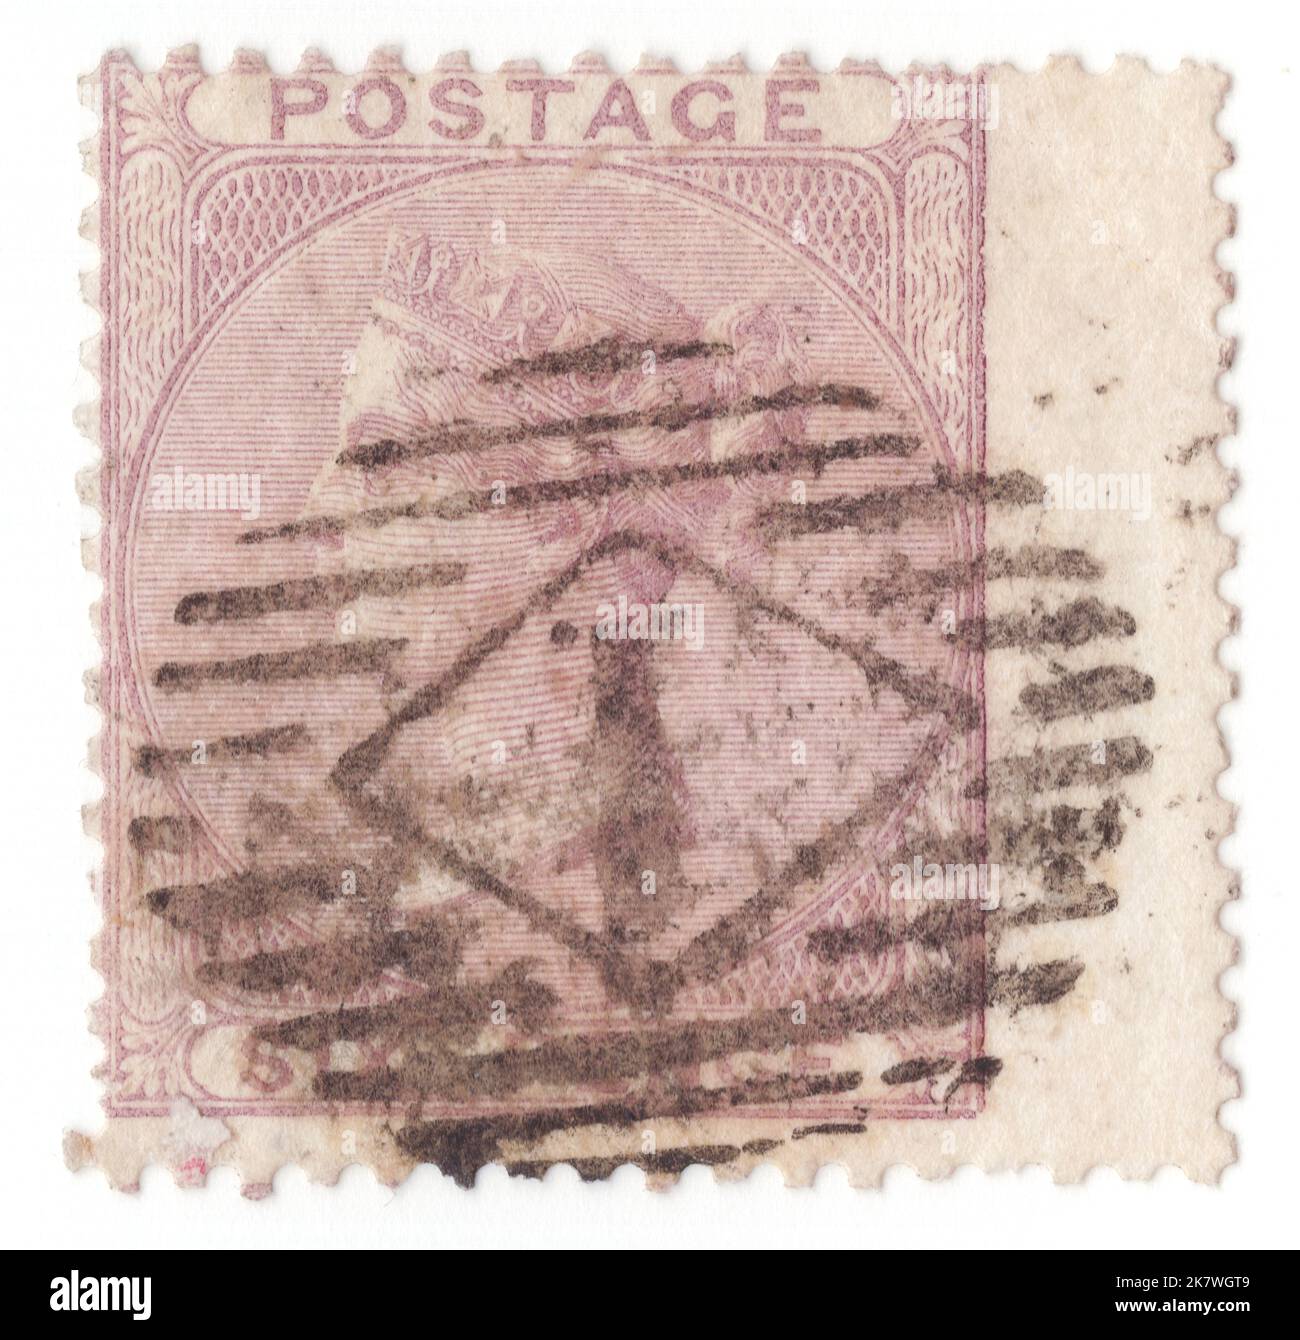 ROYAUME-UNI - 1856: Un timbre-poste lilas de 6 pence montrant le portrait de la reine Victoria en cercle Banque D'Images